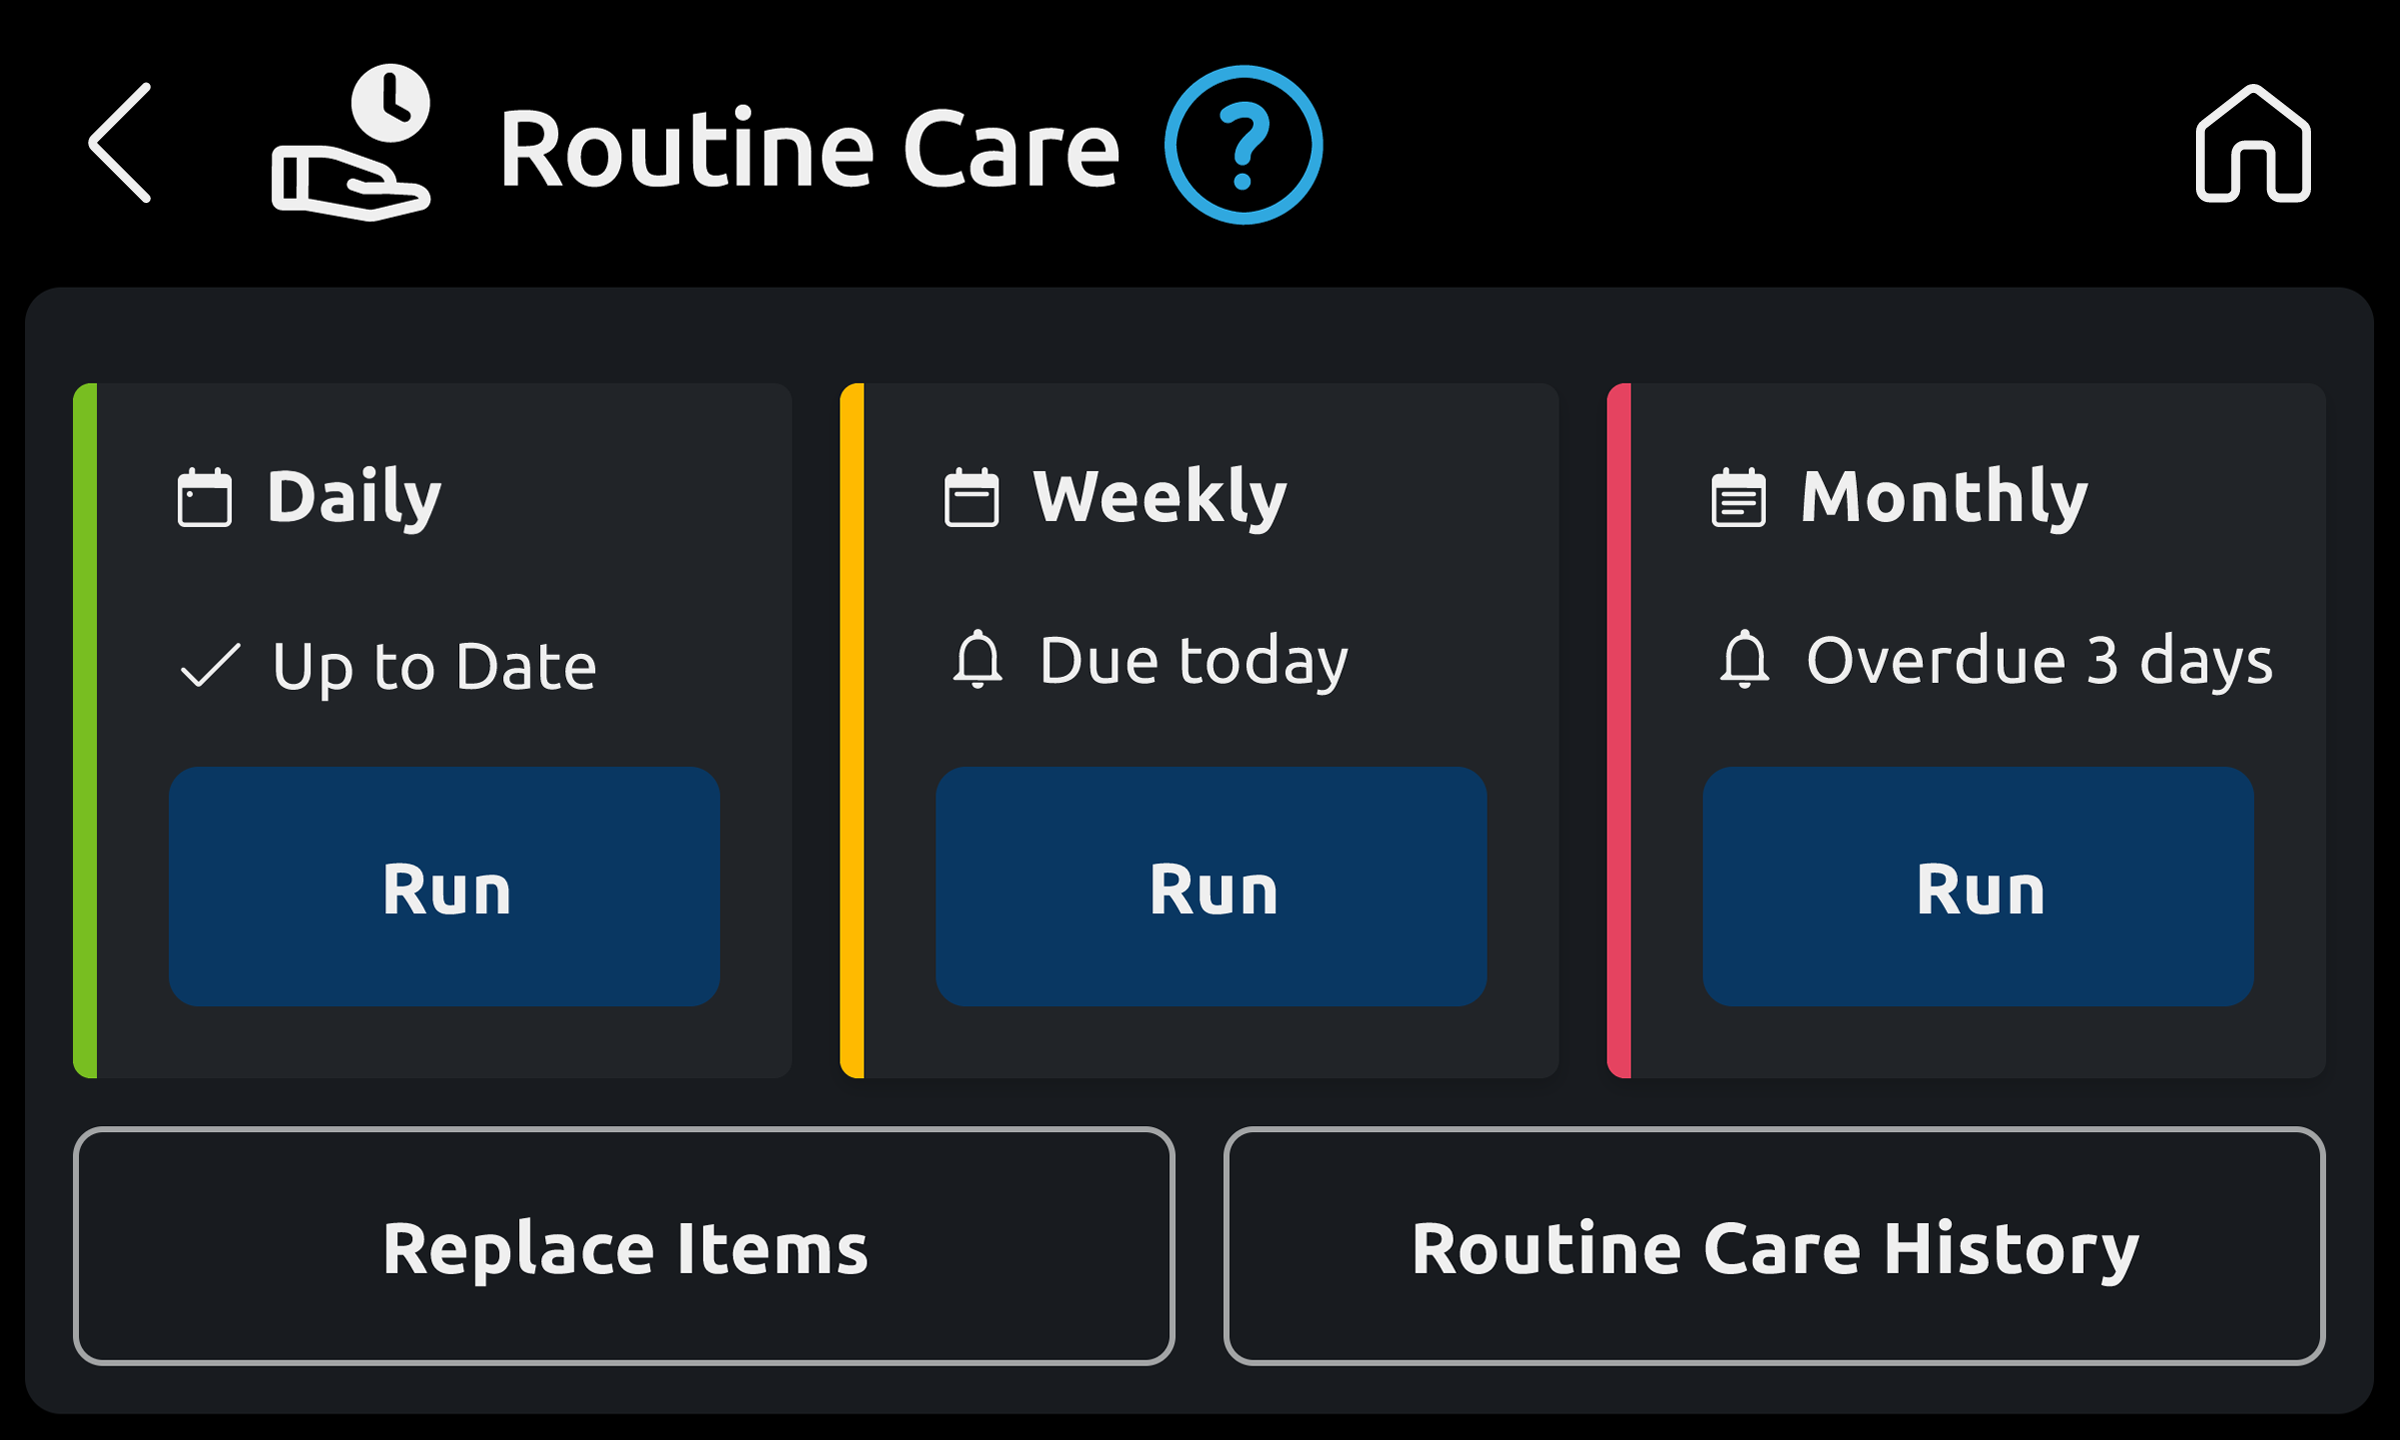 Routine Care